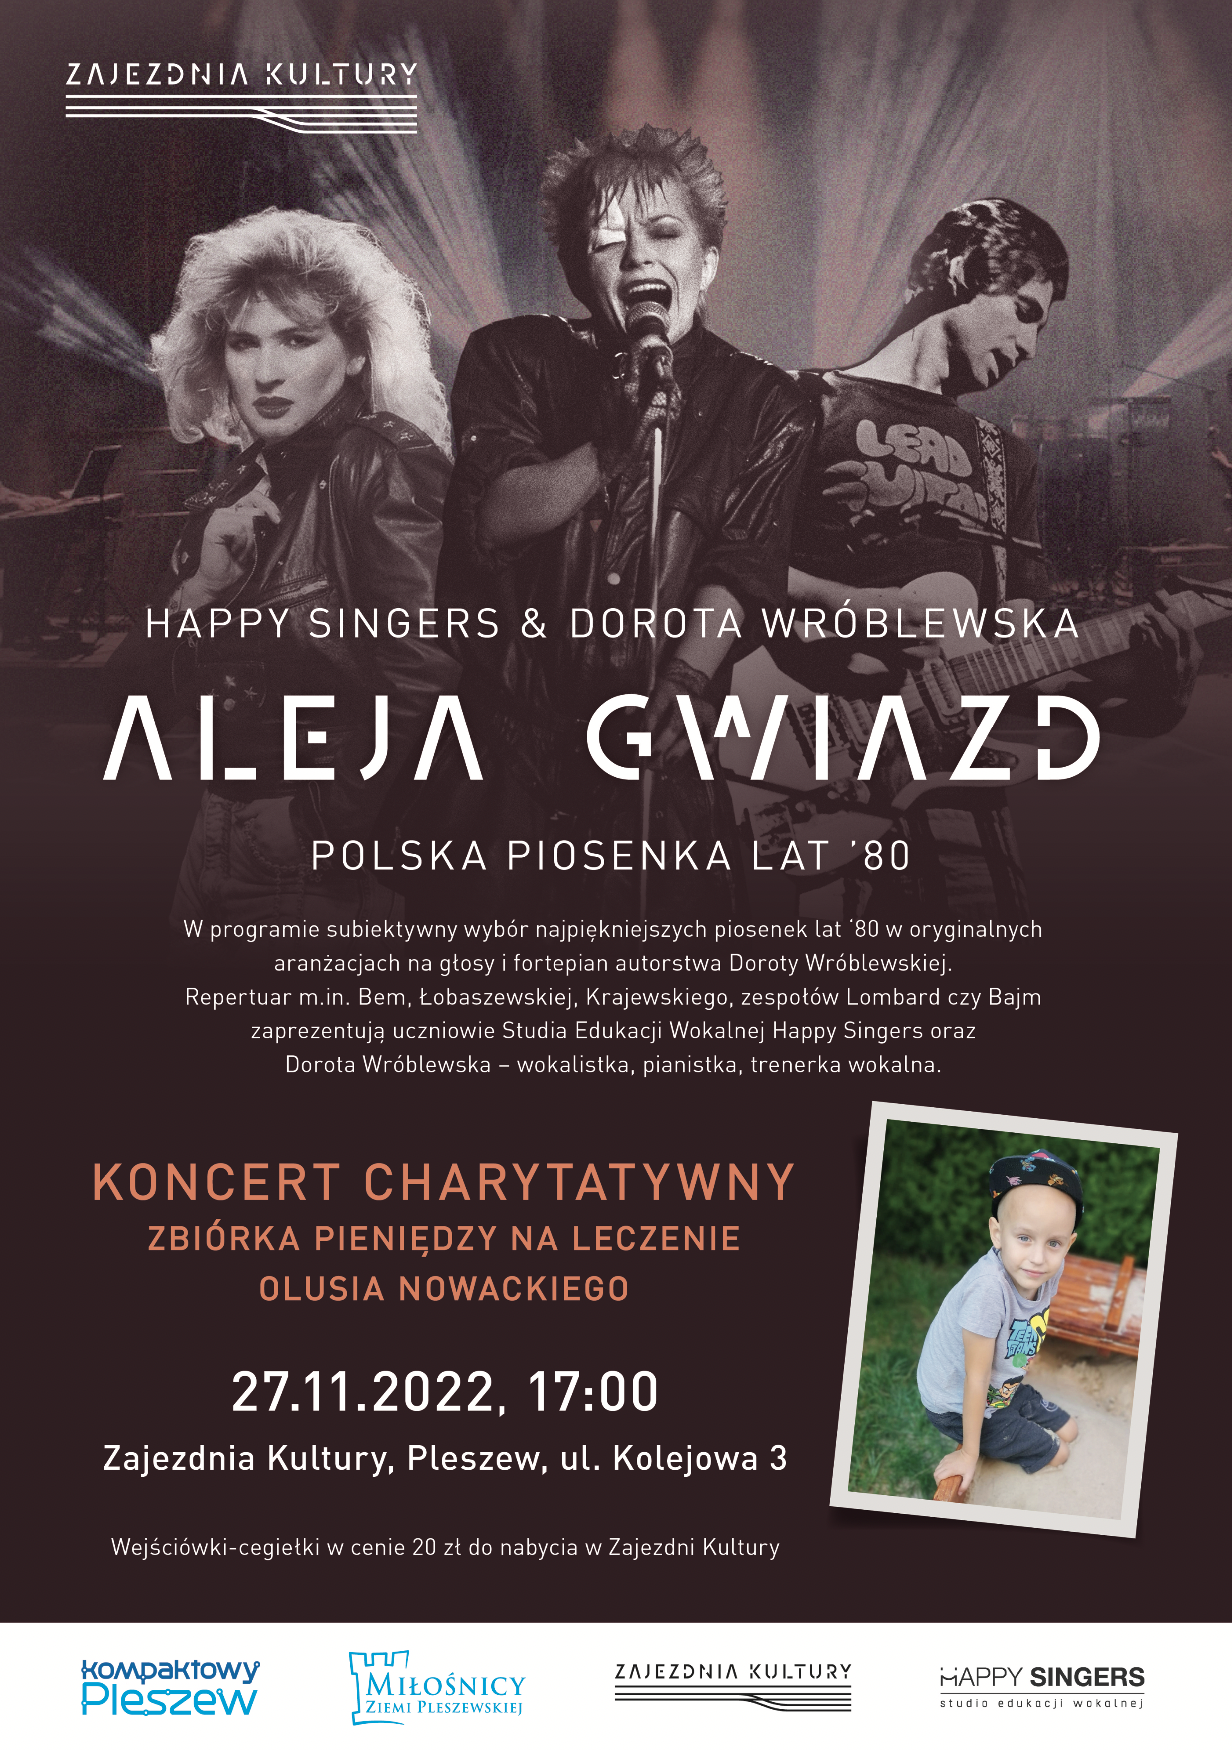 Plakat koncertu charytatywnego "Aleja gwiazd" odbywającego się w Zajezdni Kultury w Pleszewie 27 listopada 2022 o godzinie 17:00